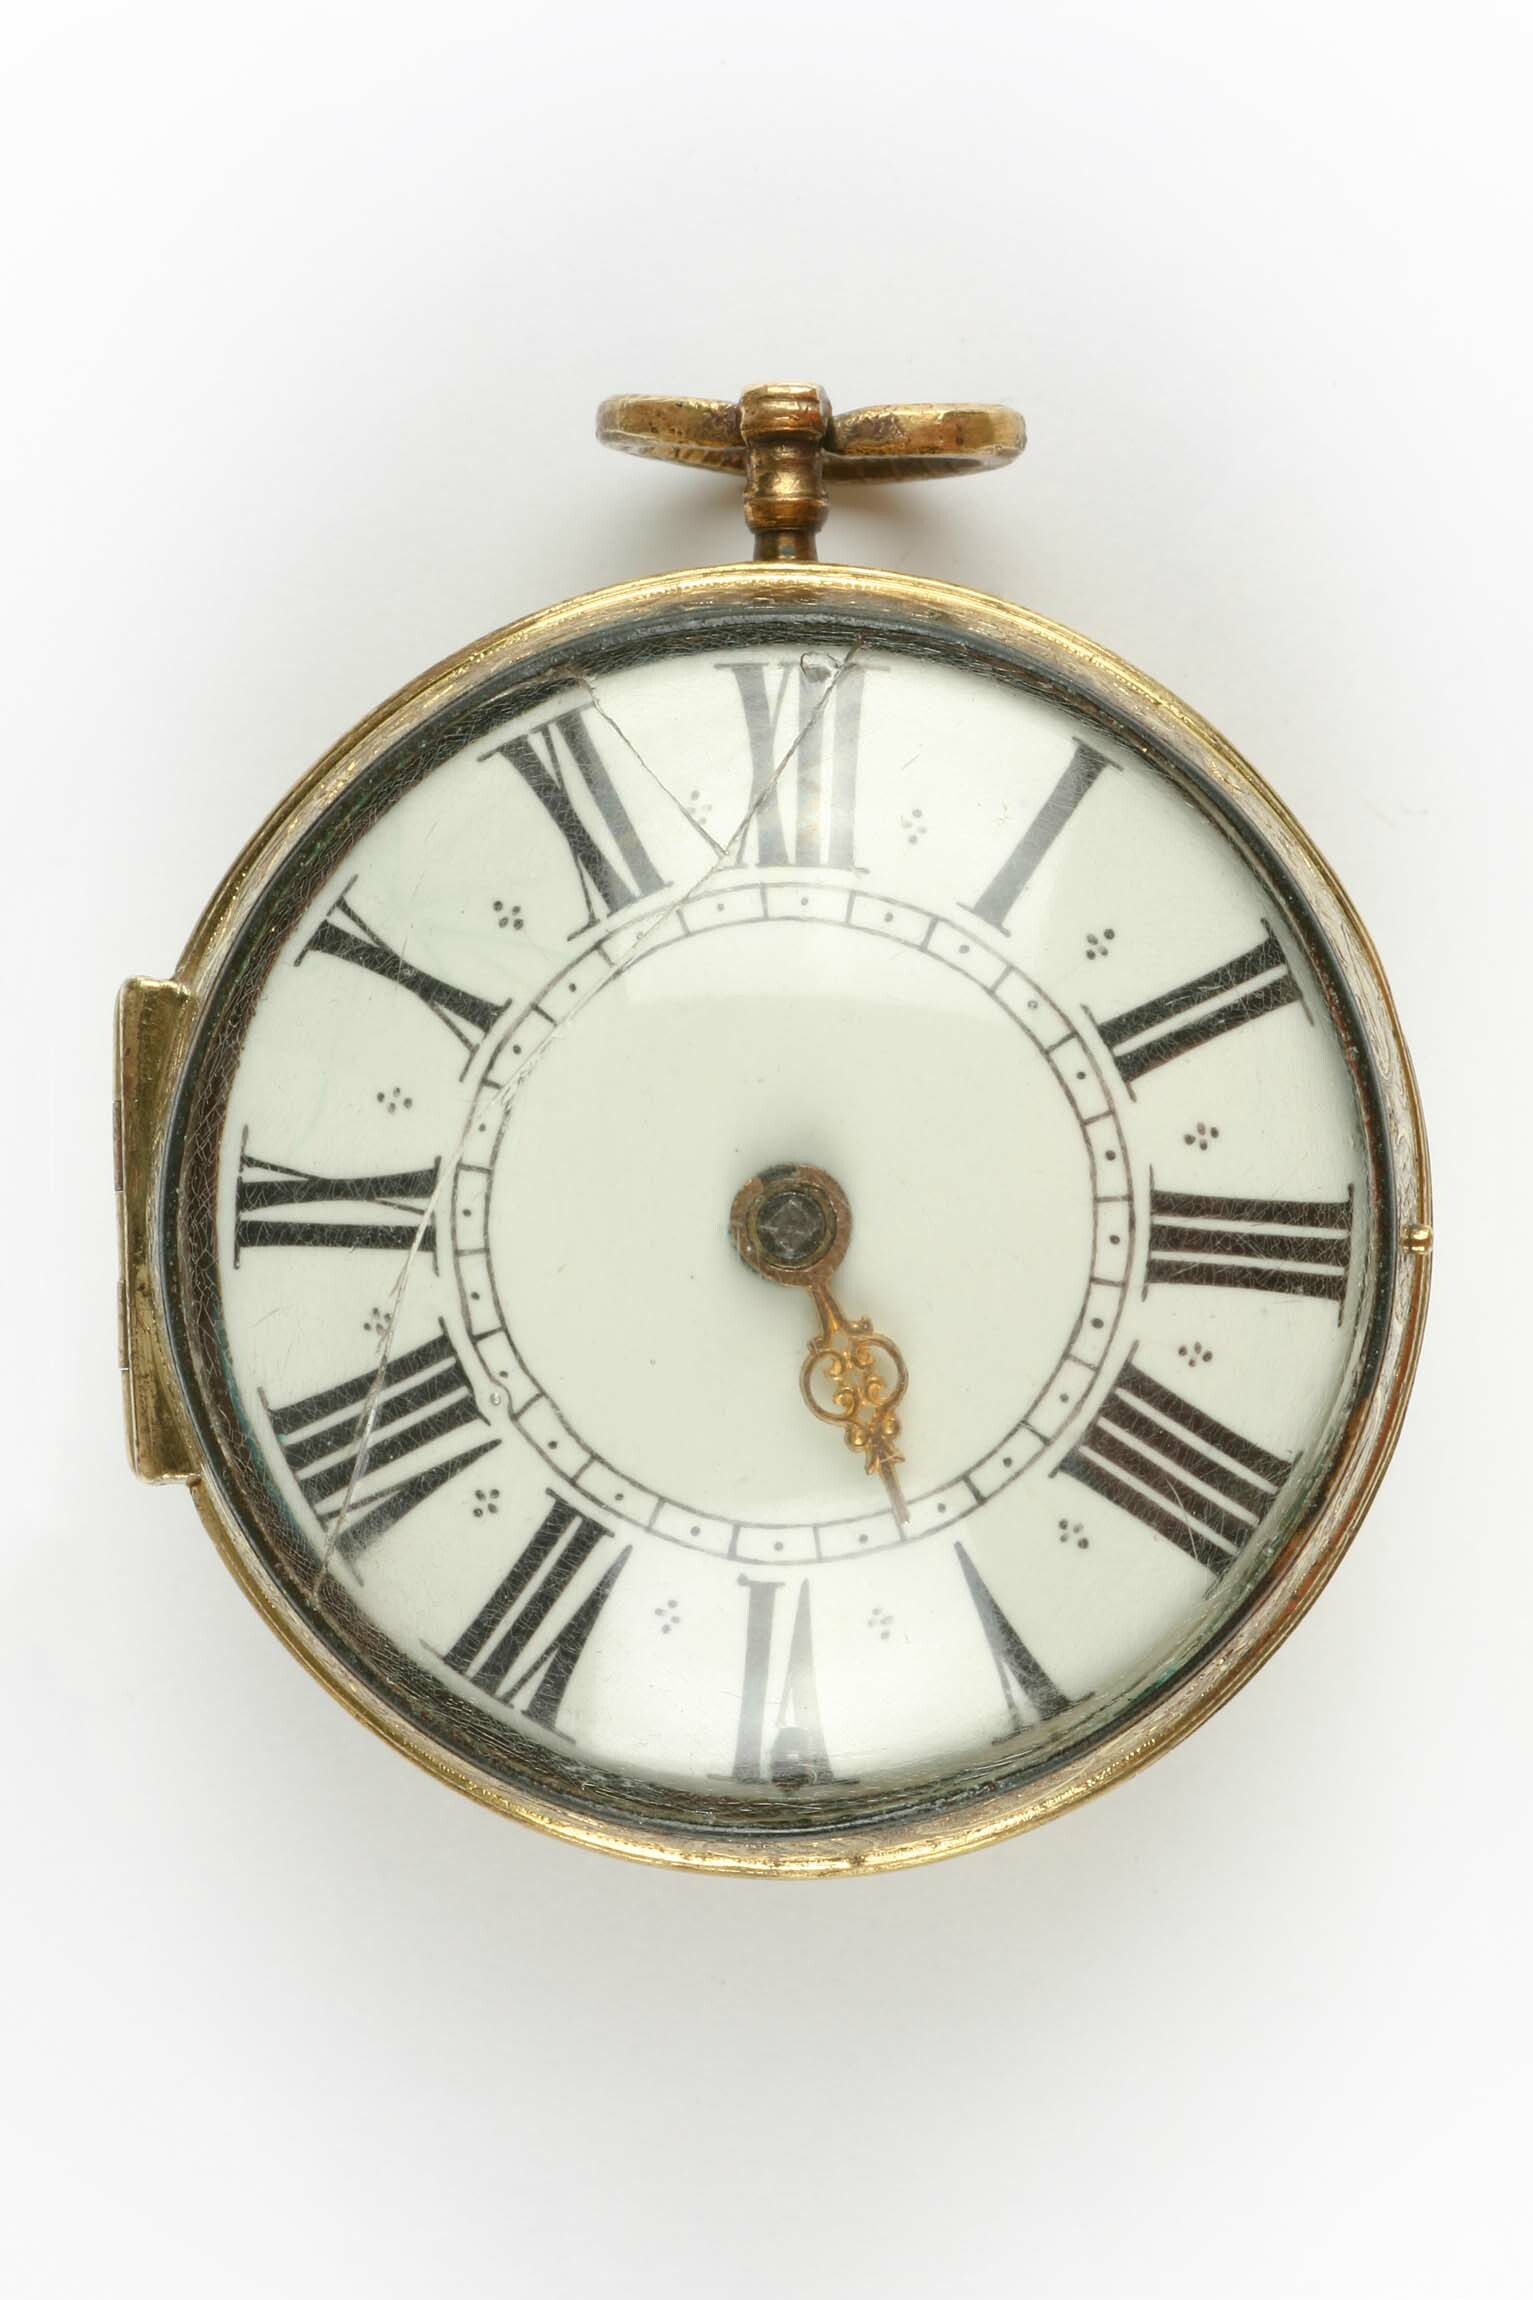 Taschenuhr, Gribelin, Paris, um 1700 (Deutsches Uhrenmuseum CC BY-SA)